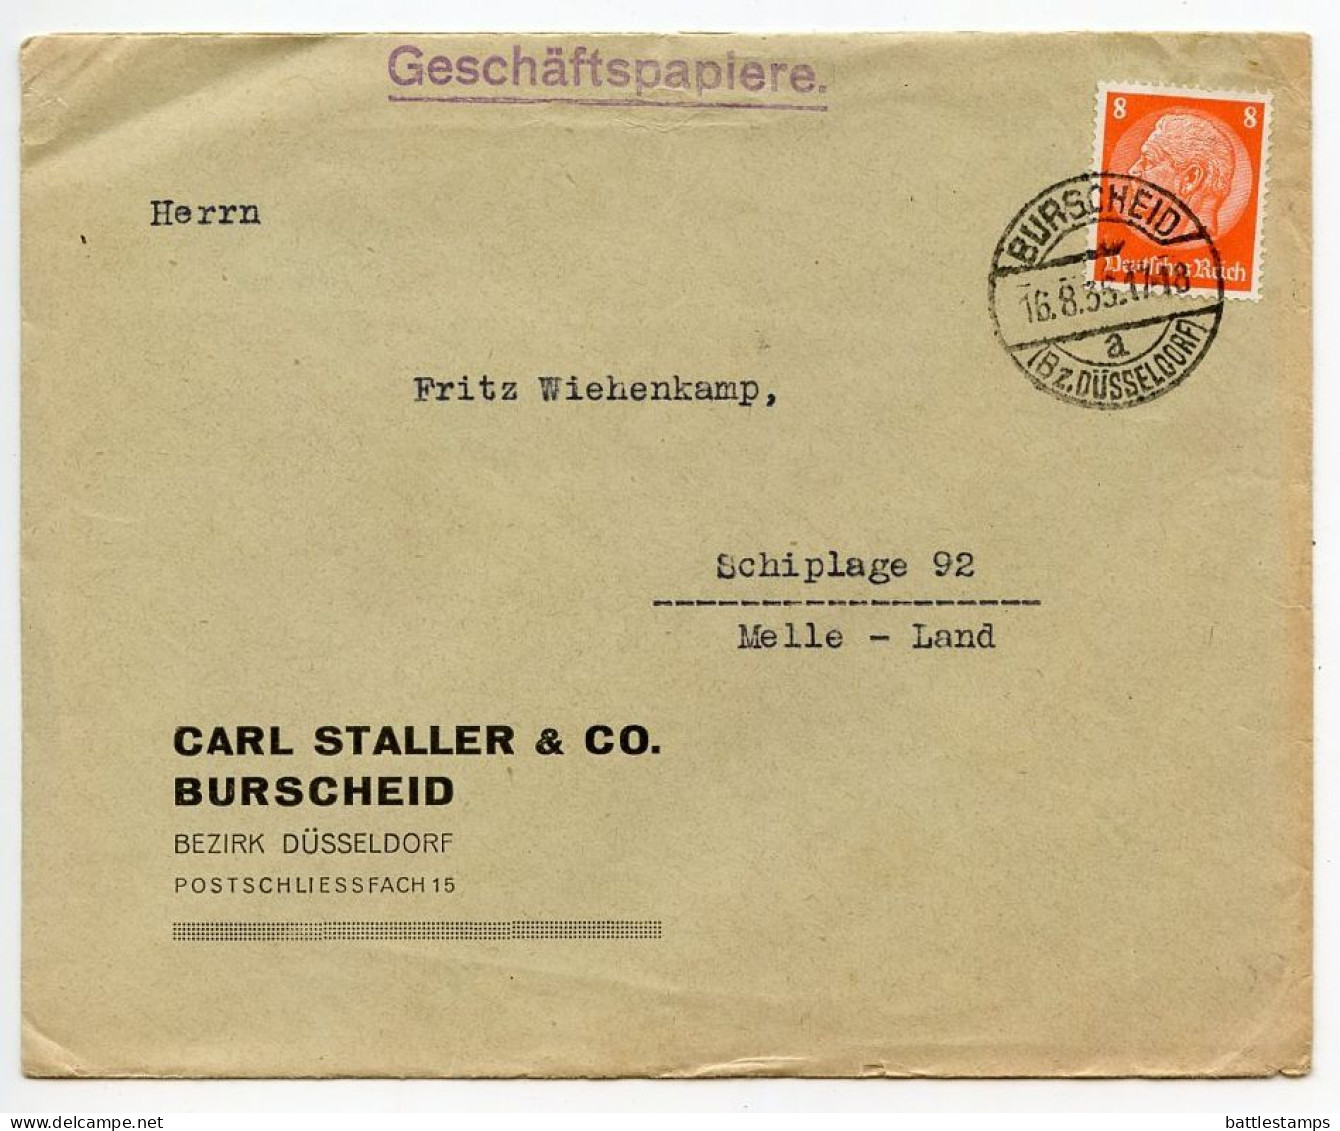 Germany 1935 Cover; Burscheid (Bz. Düsseldorf) - Carl Staller & Co. To Schiplage; 8pf. Hindenburg - Covers & Documents